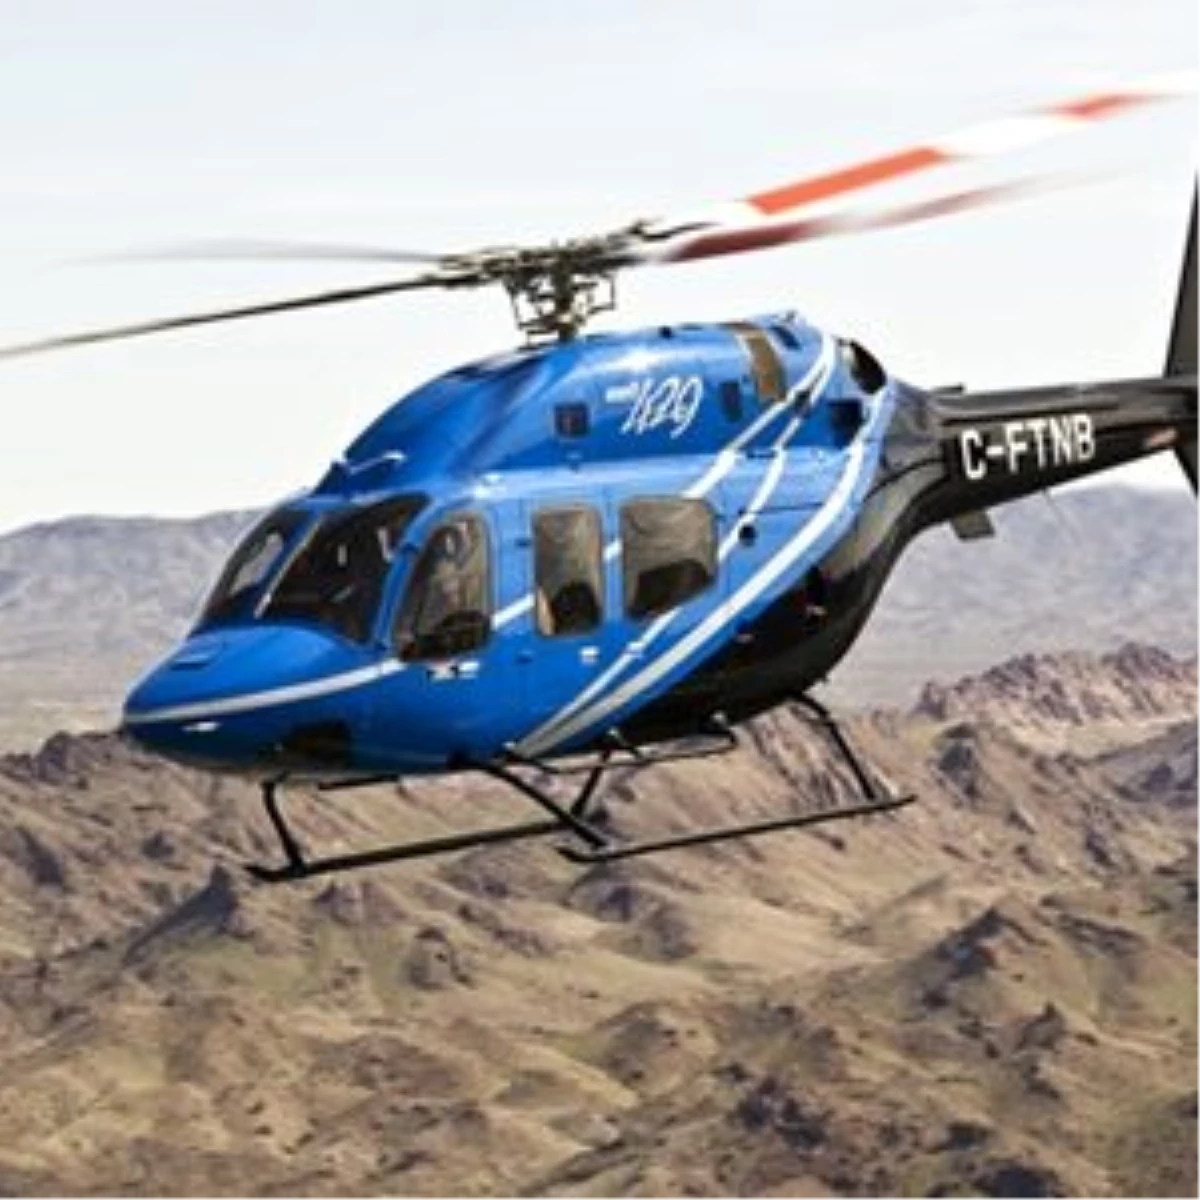 Emniyet Genel Müdürlüğü "Bell 429" Helikopteri Alacak